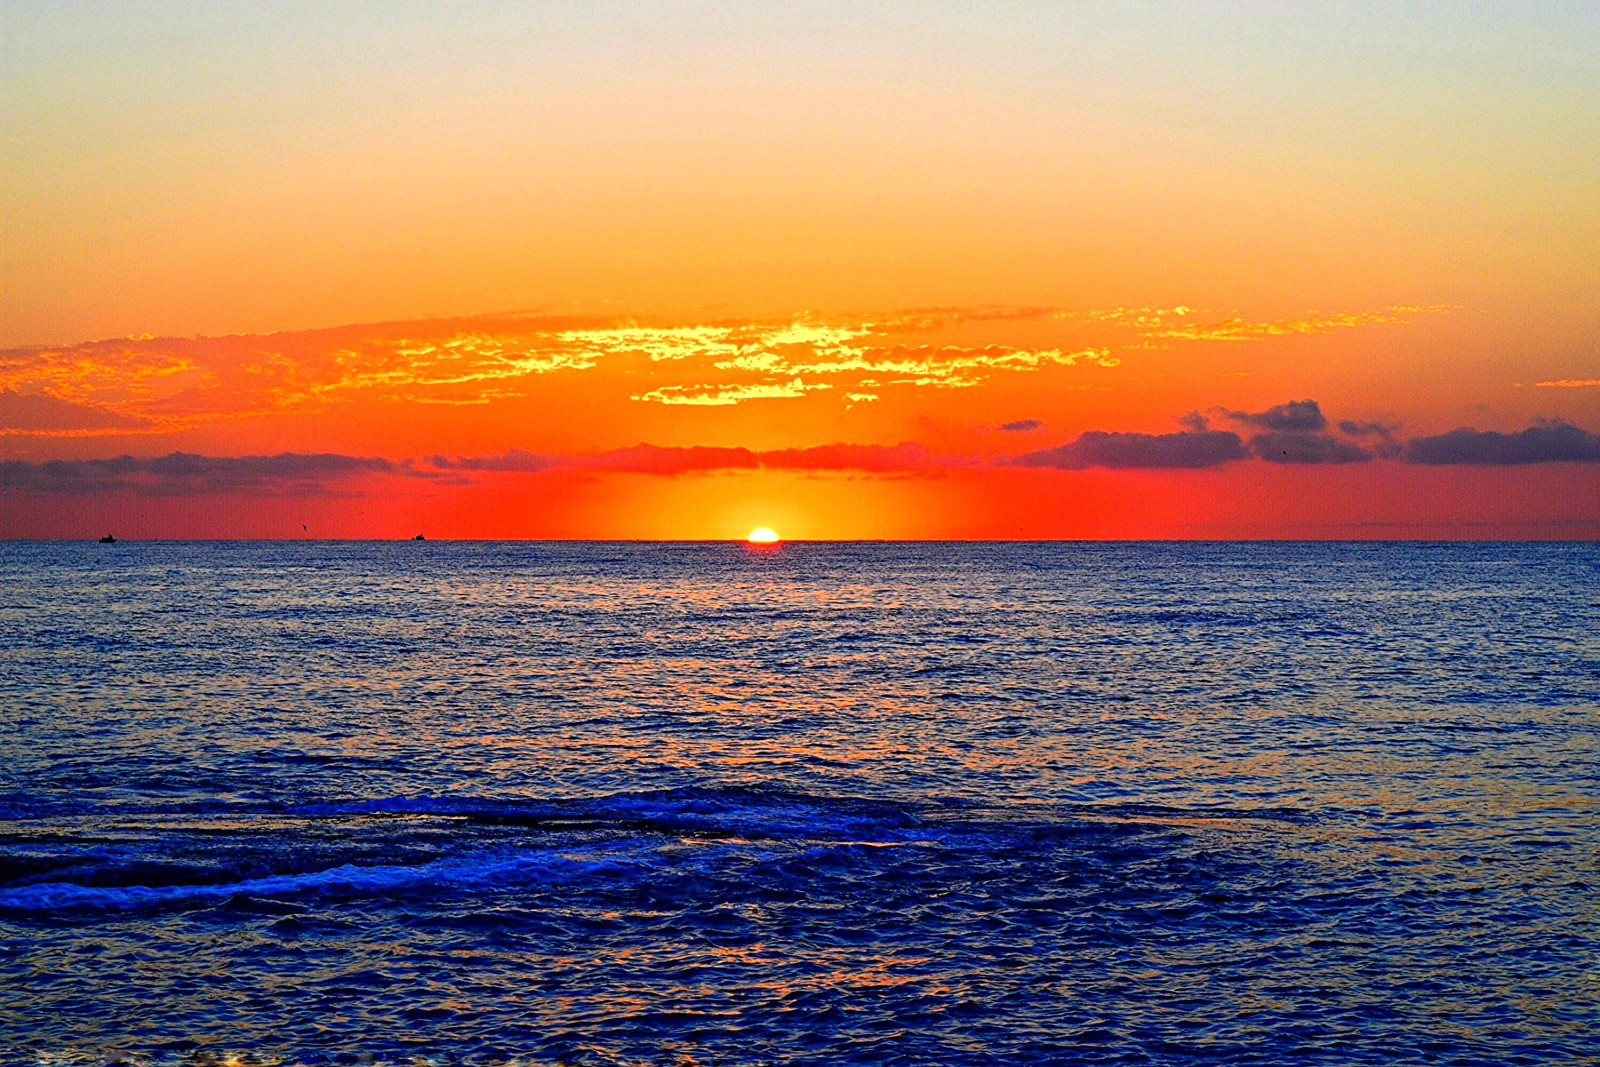 ทะเล, เมฆ, เรือ, พระอาทิตย์ขึ้น, ขอบฟ้า, ท้องฟ้าสีส้ม